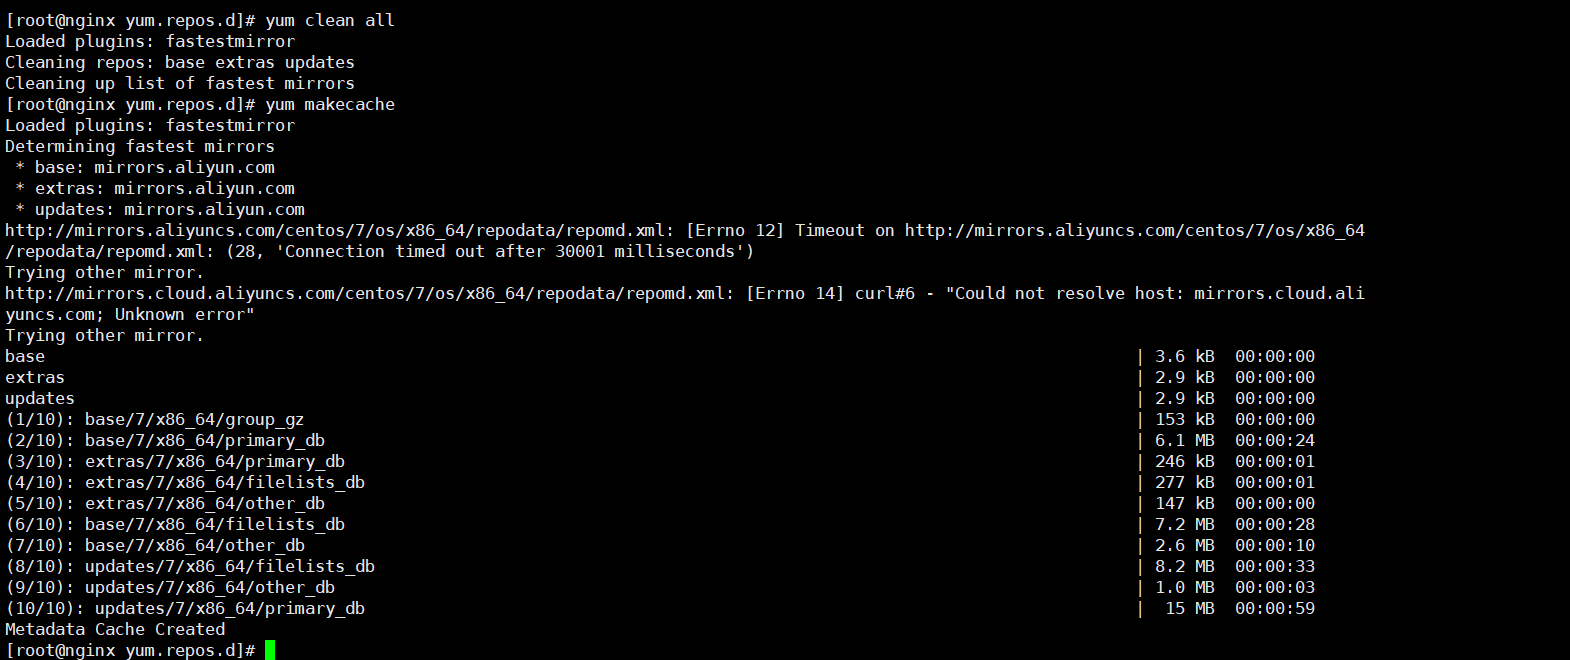 linux下安装jdk环境